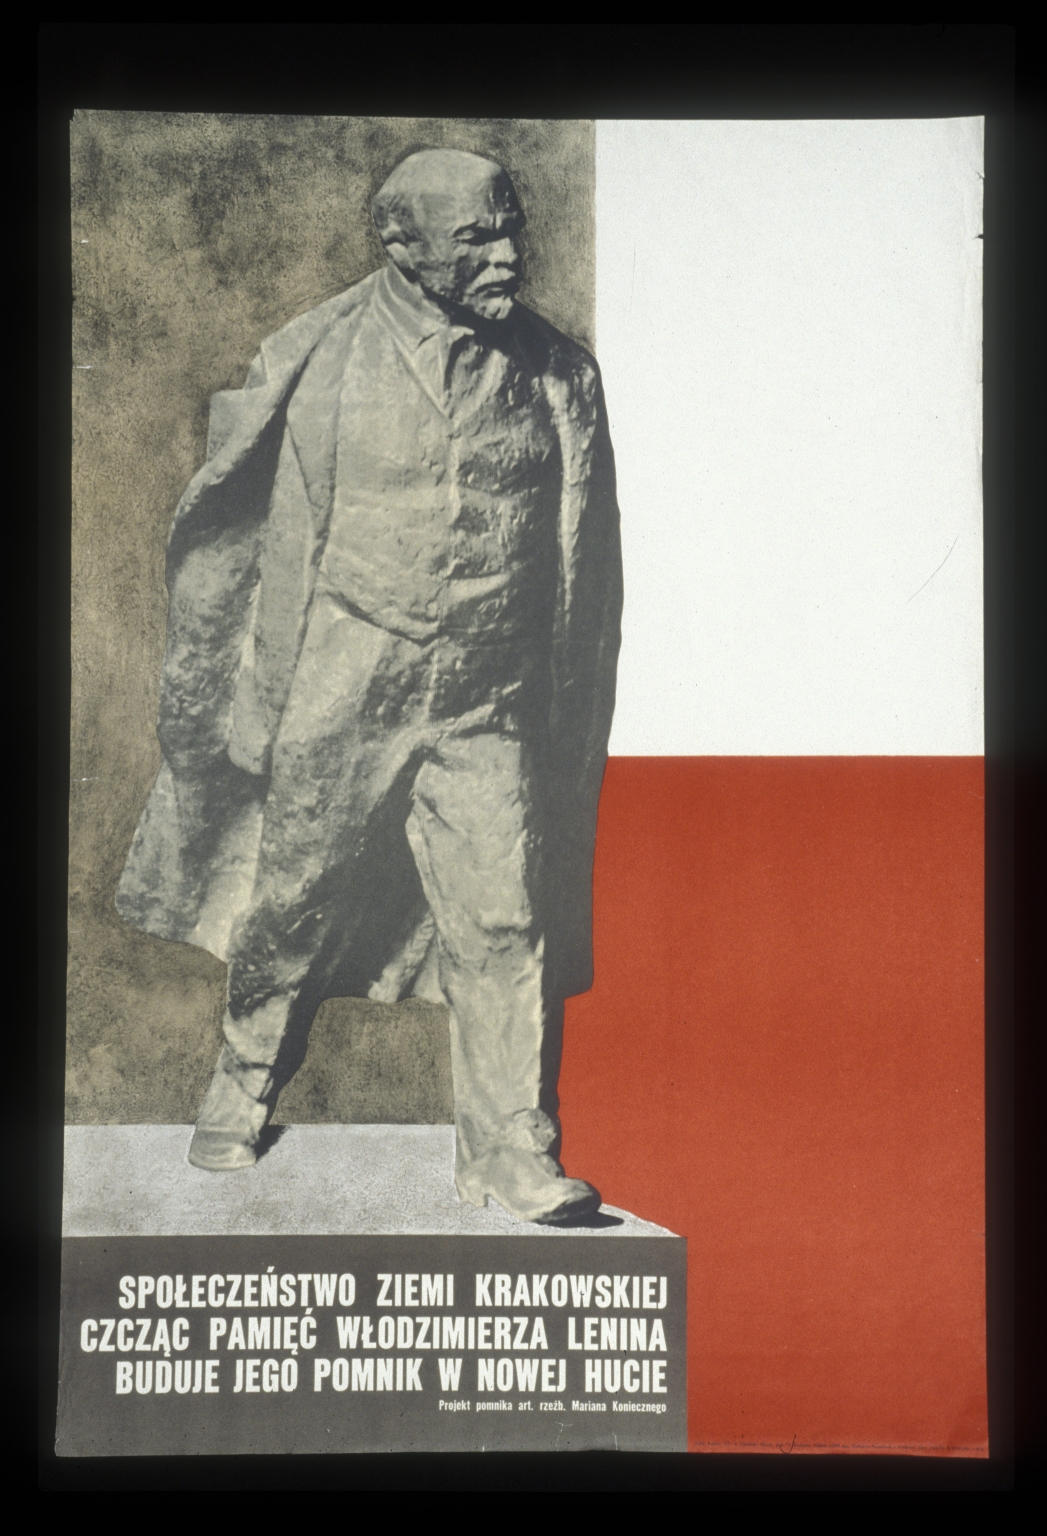 Spoleczenstwo Ziemi Krakowskiej czczac pamiecwPoland - Lodzmierza Lenina buduje jego pomnik w Nowej Hucie